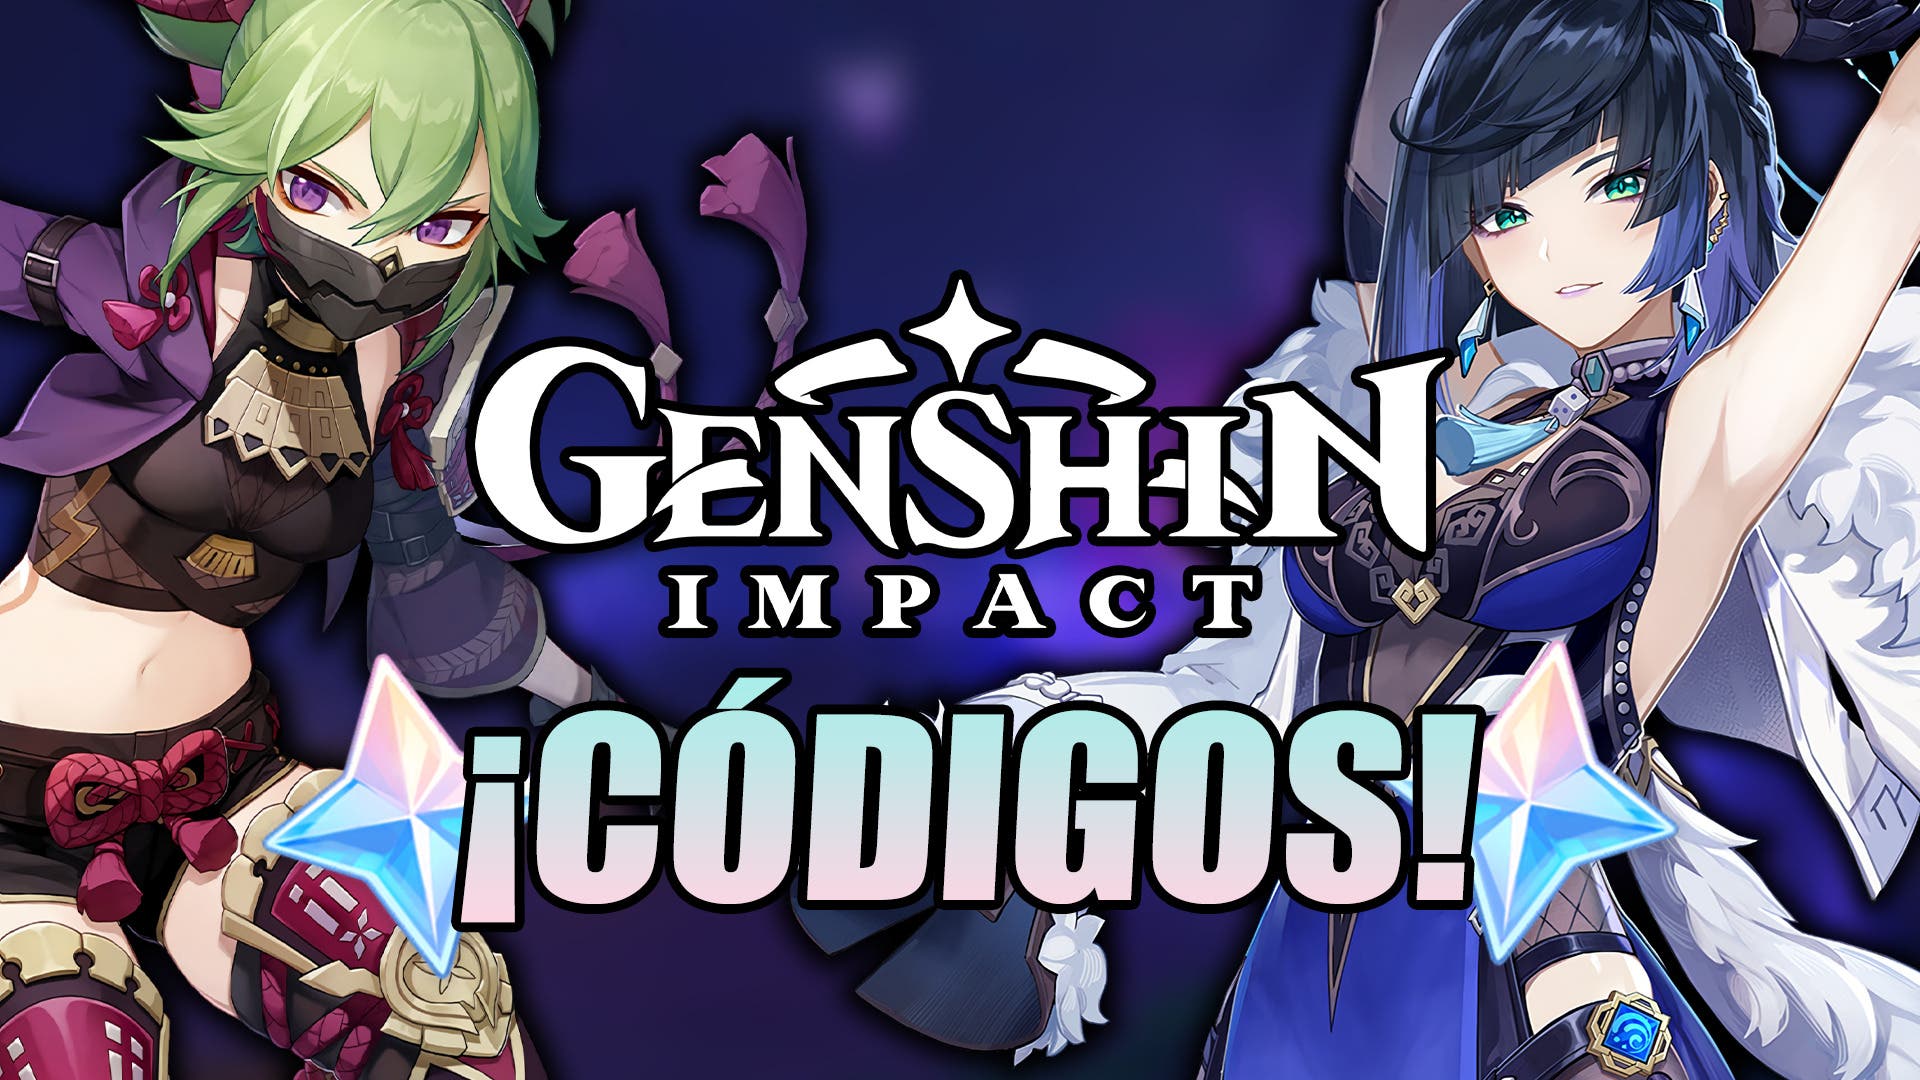 Genshin Impact: códigos de Protogemas gratis en mayo de 2022